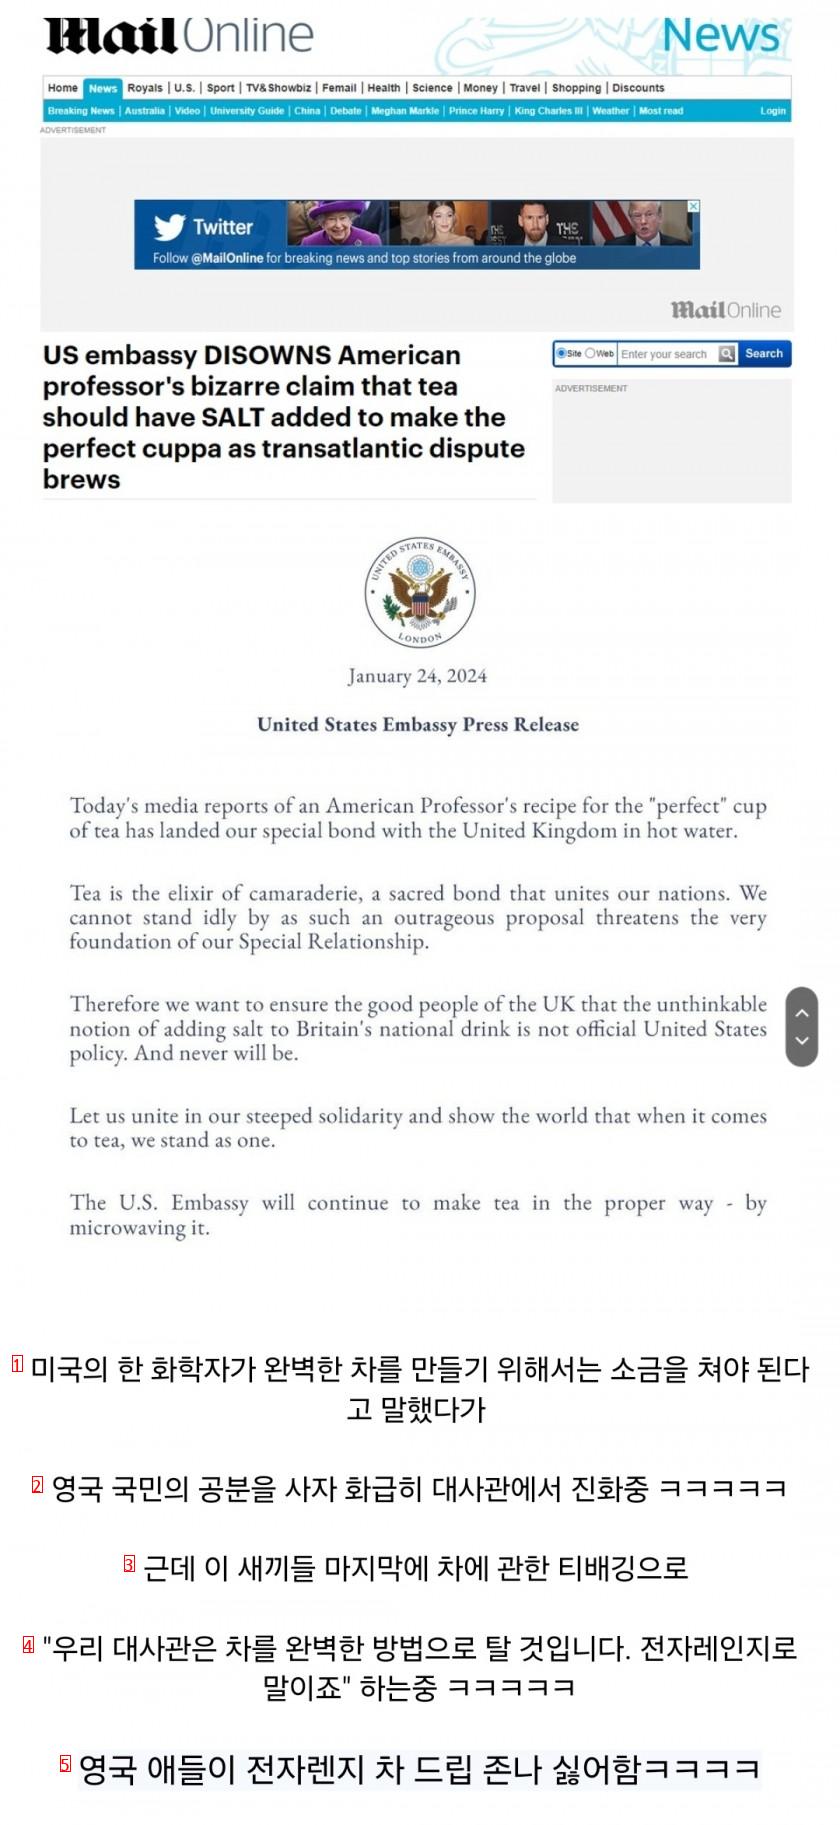 駐英米国大使館緊急声明発表